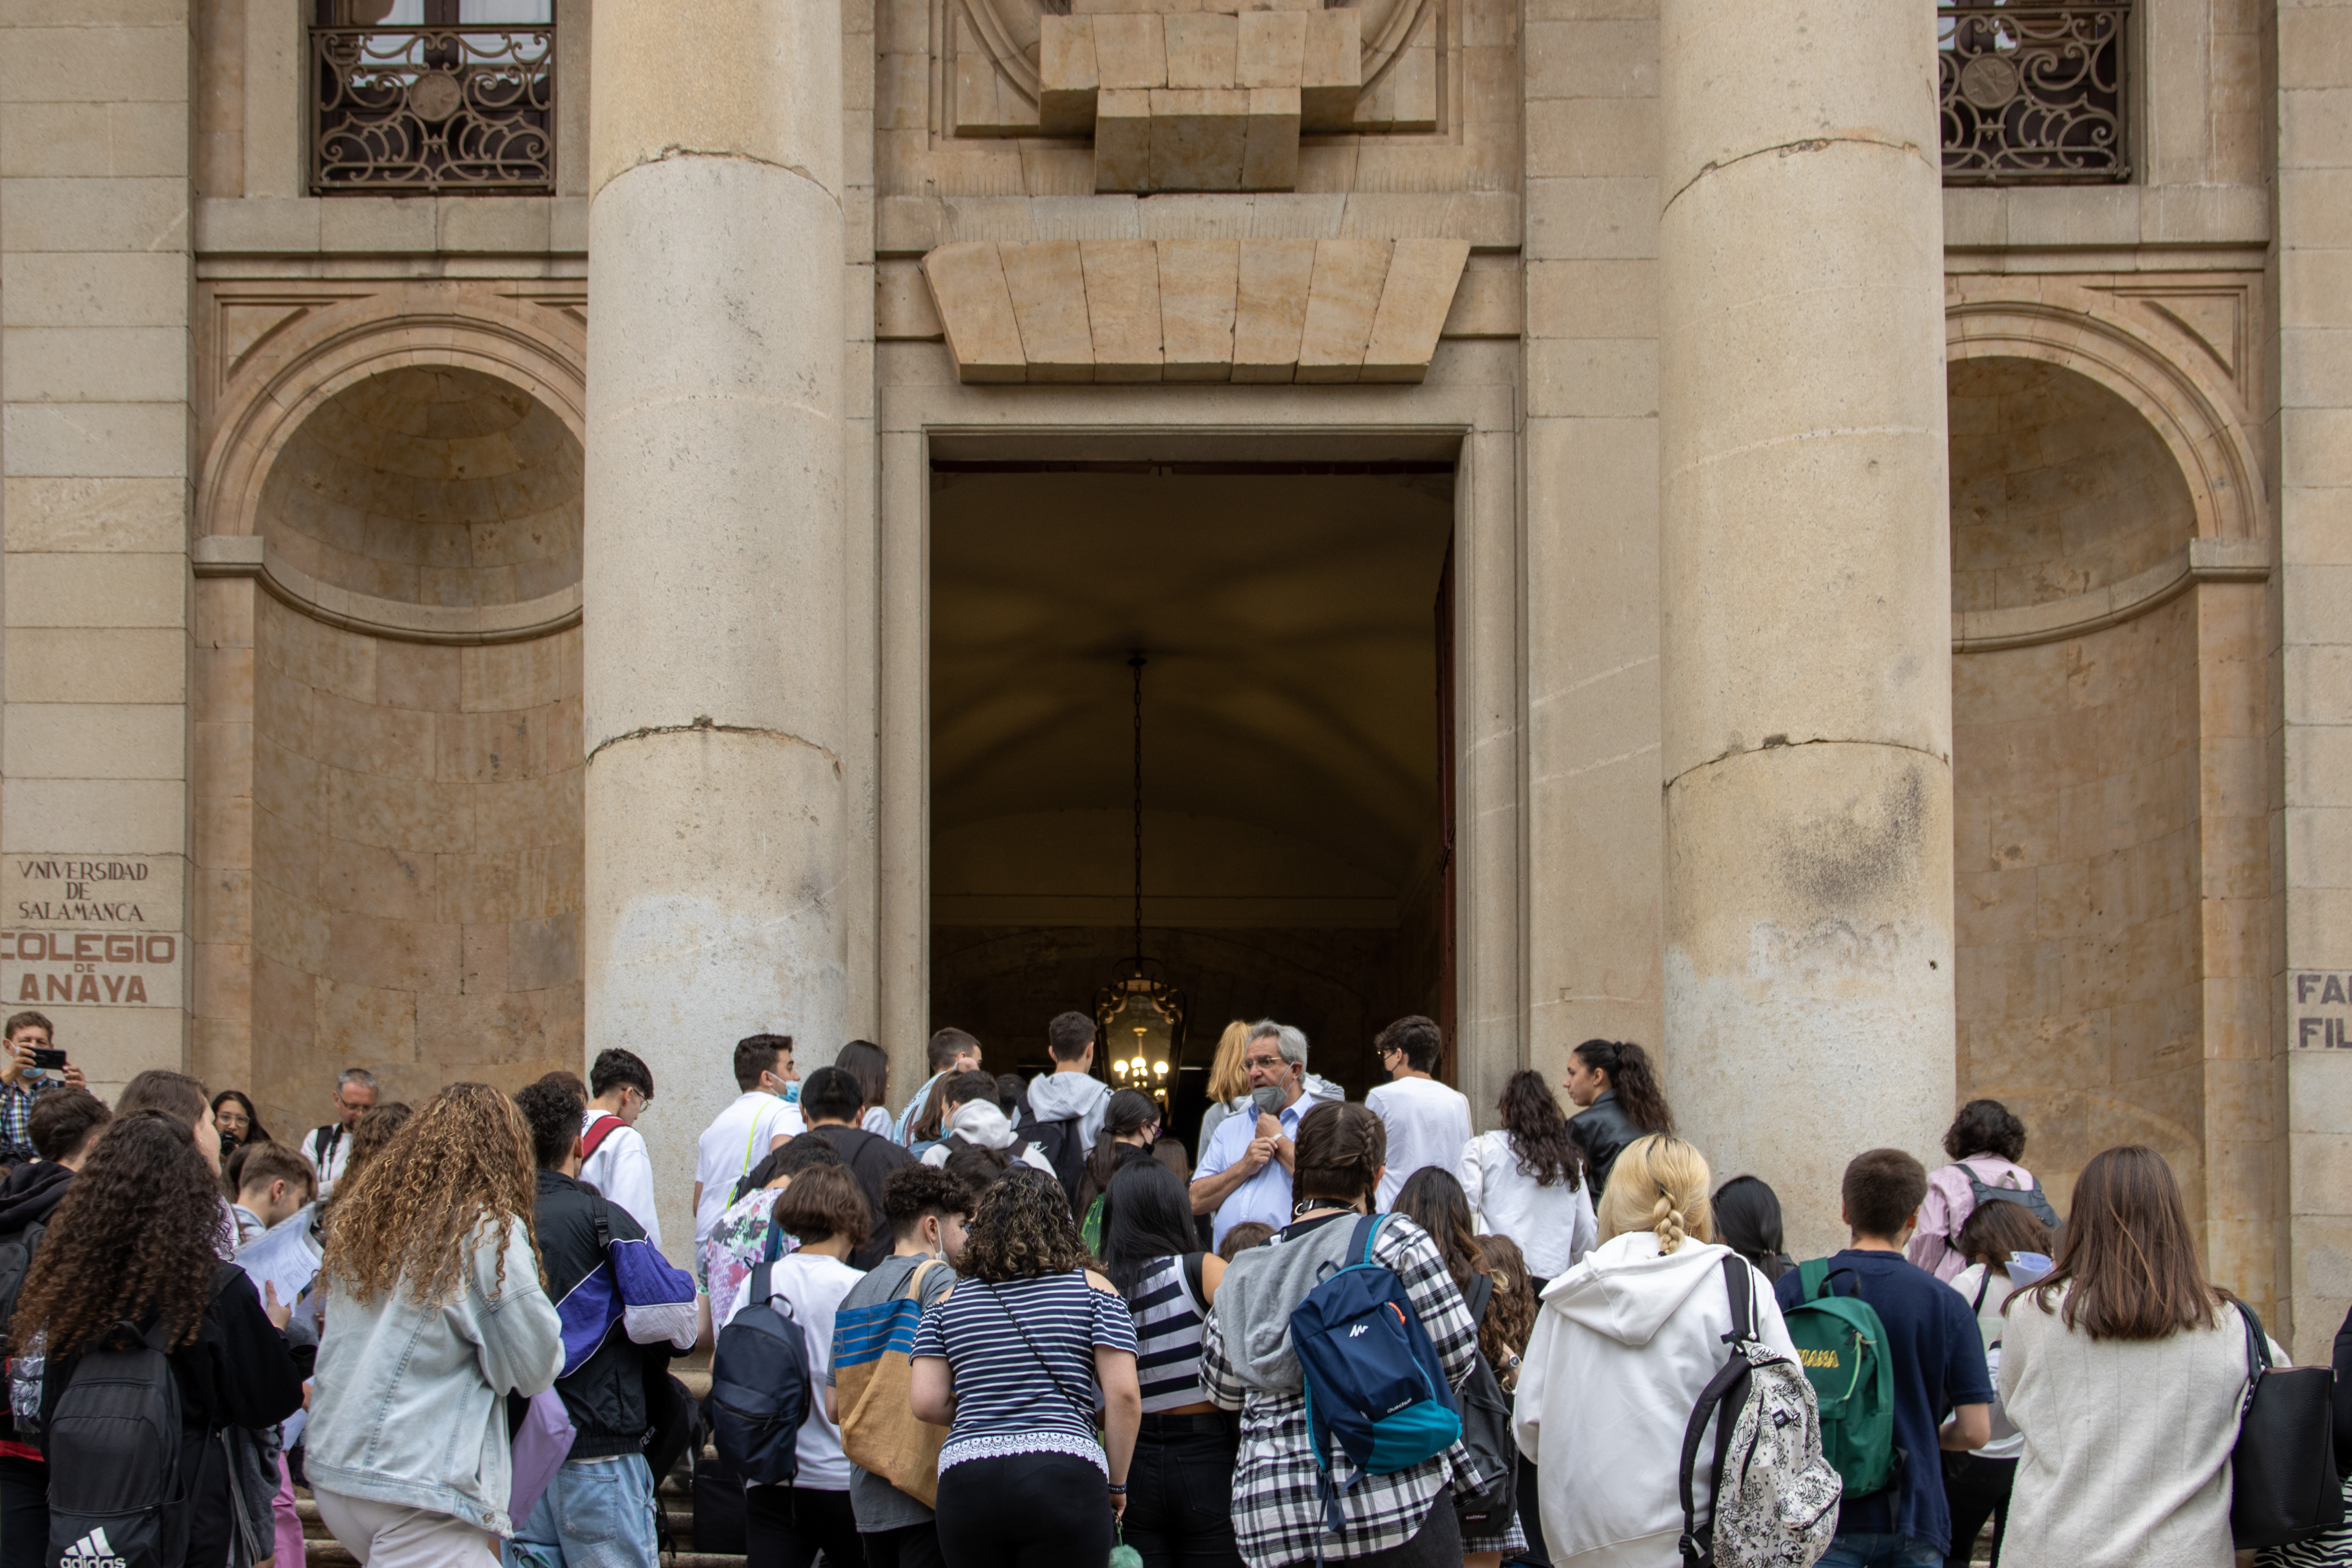 El 98% de los estudiantes del distrito universitario de la Universidad de Salamanca supera la EBAU en la convocatoria de junio